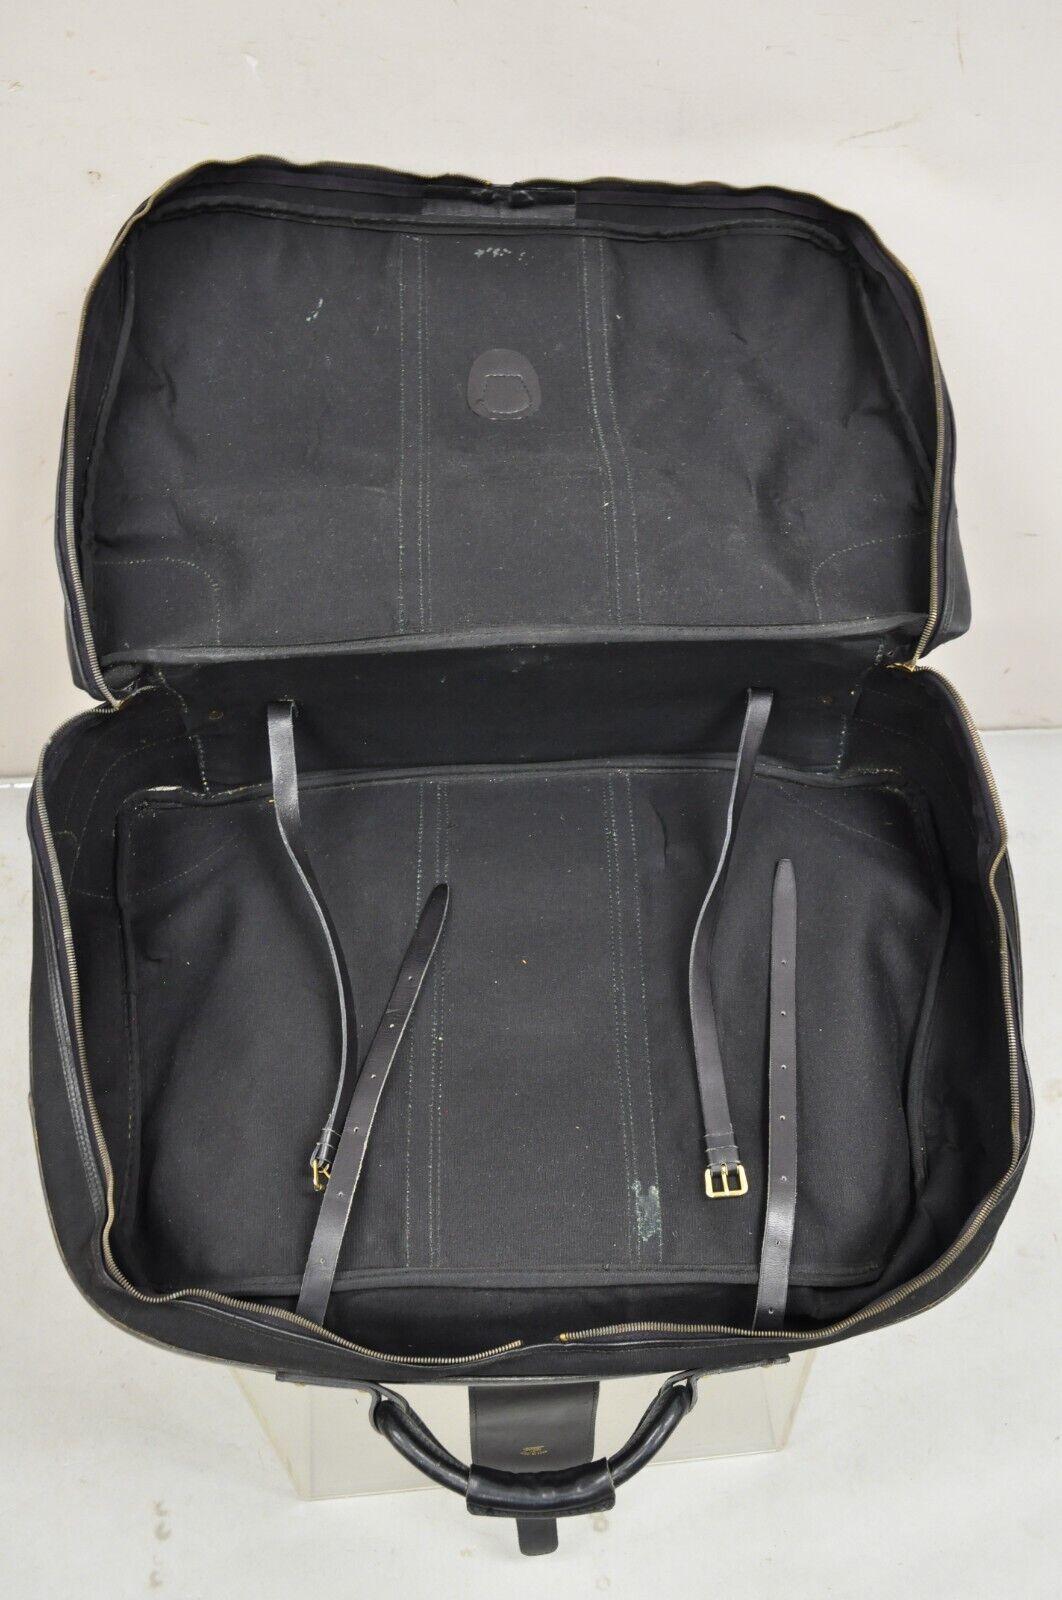 Vintage Gucci Black Canvas & Leather Suitcase Luggage Travel Bag Set - 2 Pcs For Sale 4